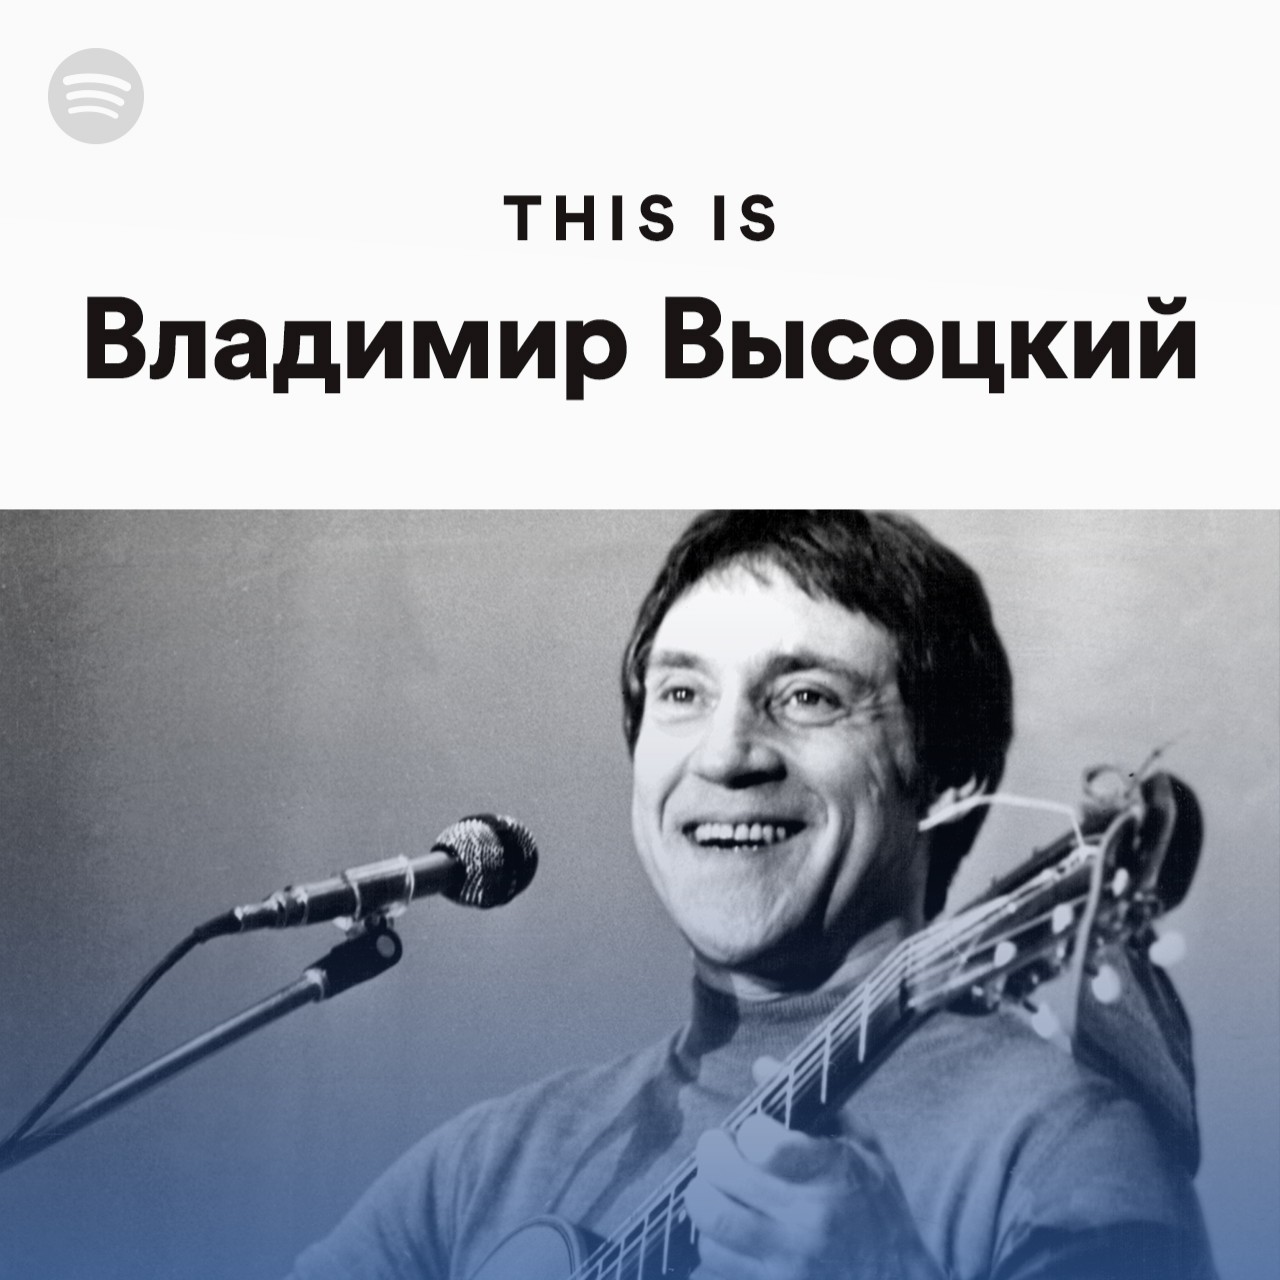 This Is Владимир Высоцкий